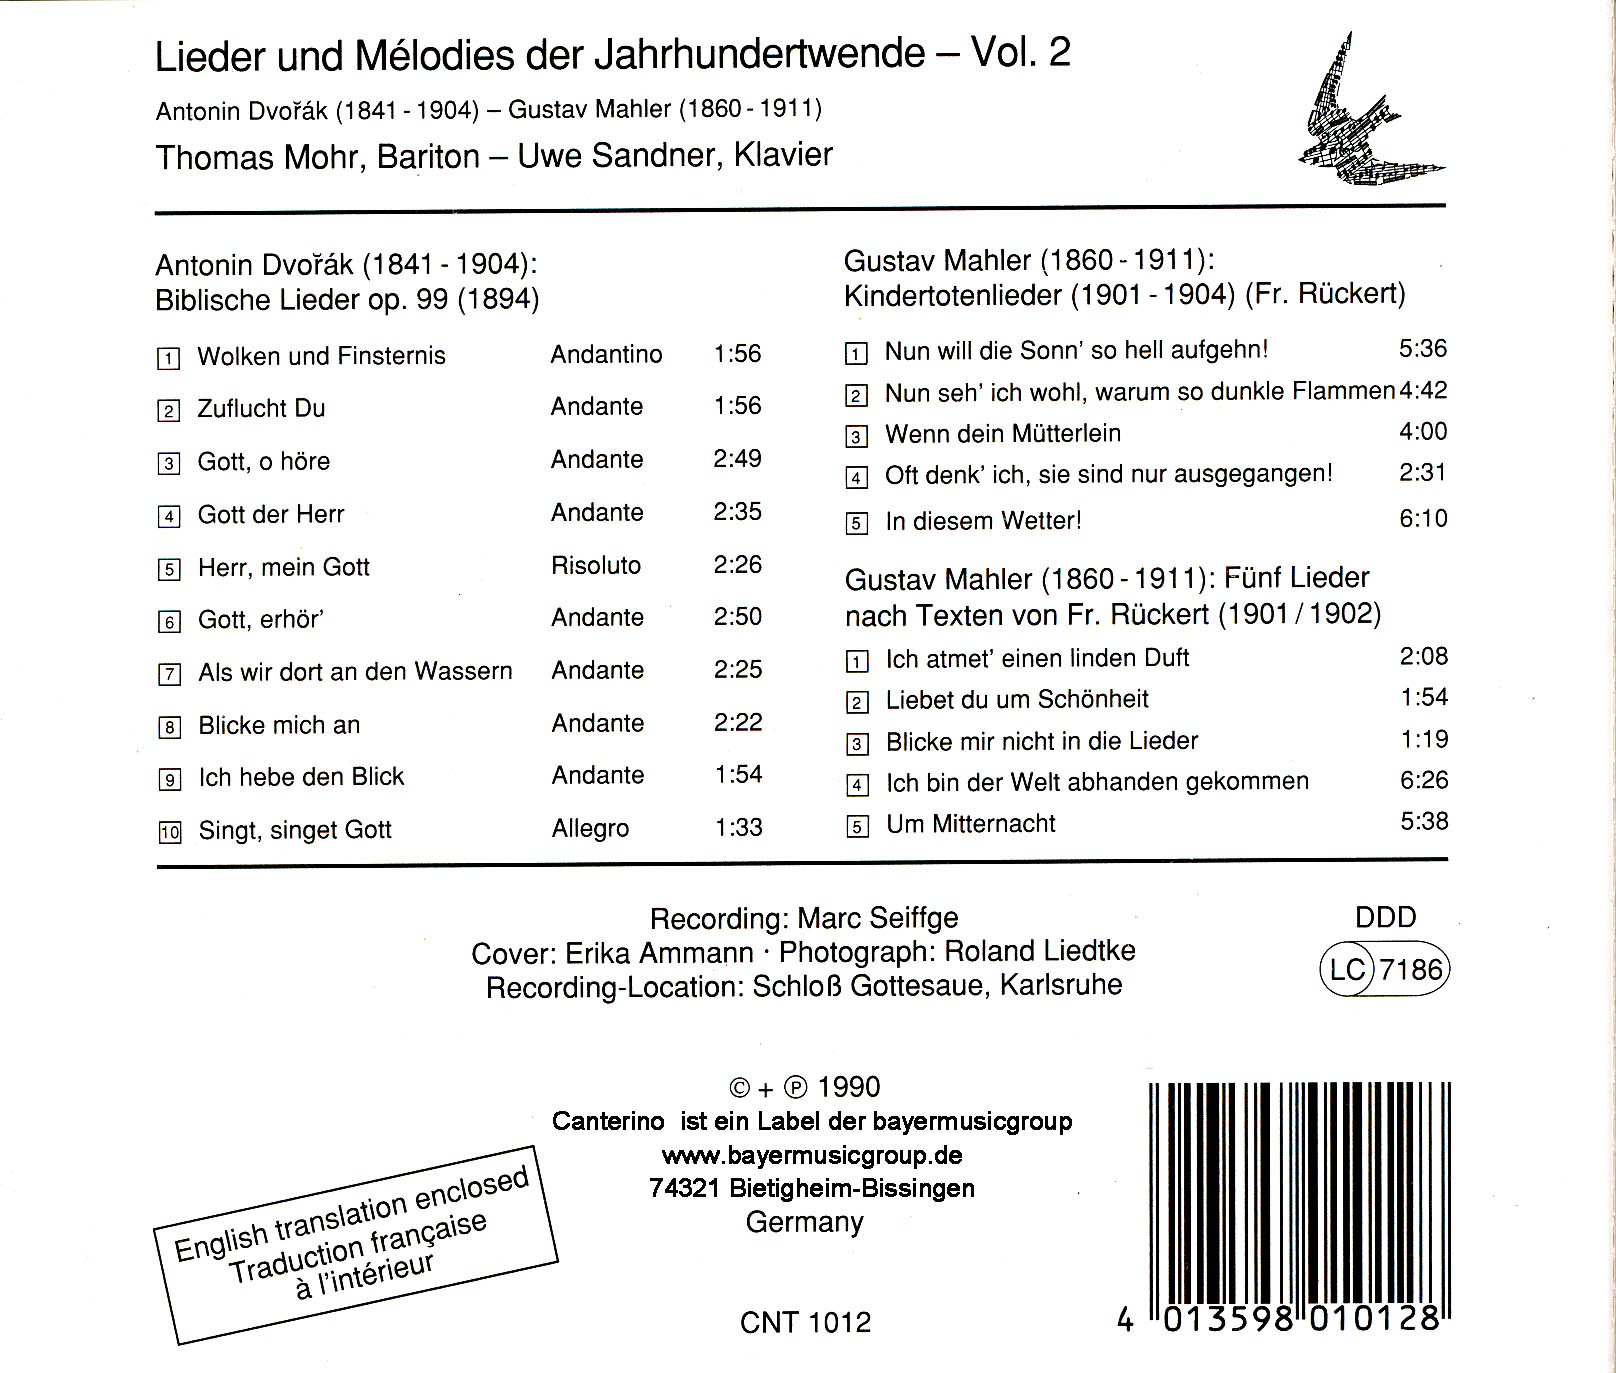 Lieder und Mélodies der Jahrhundertwende Vol. 2